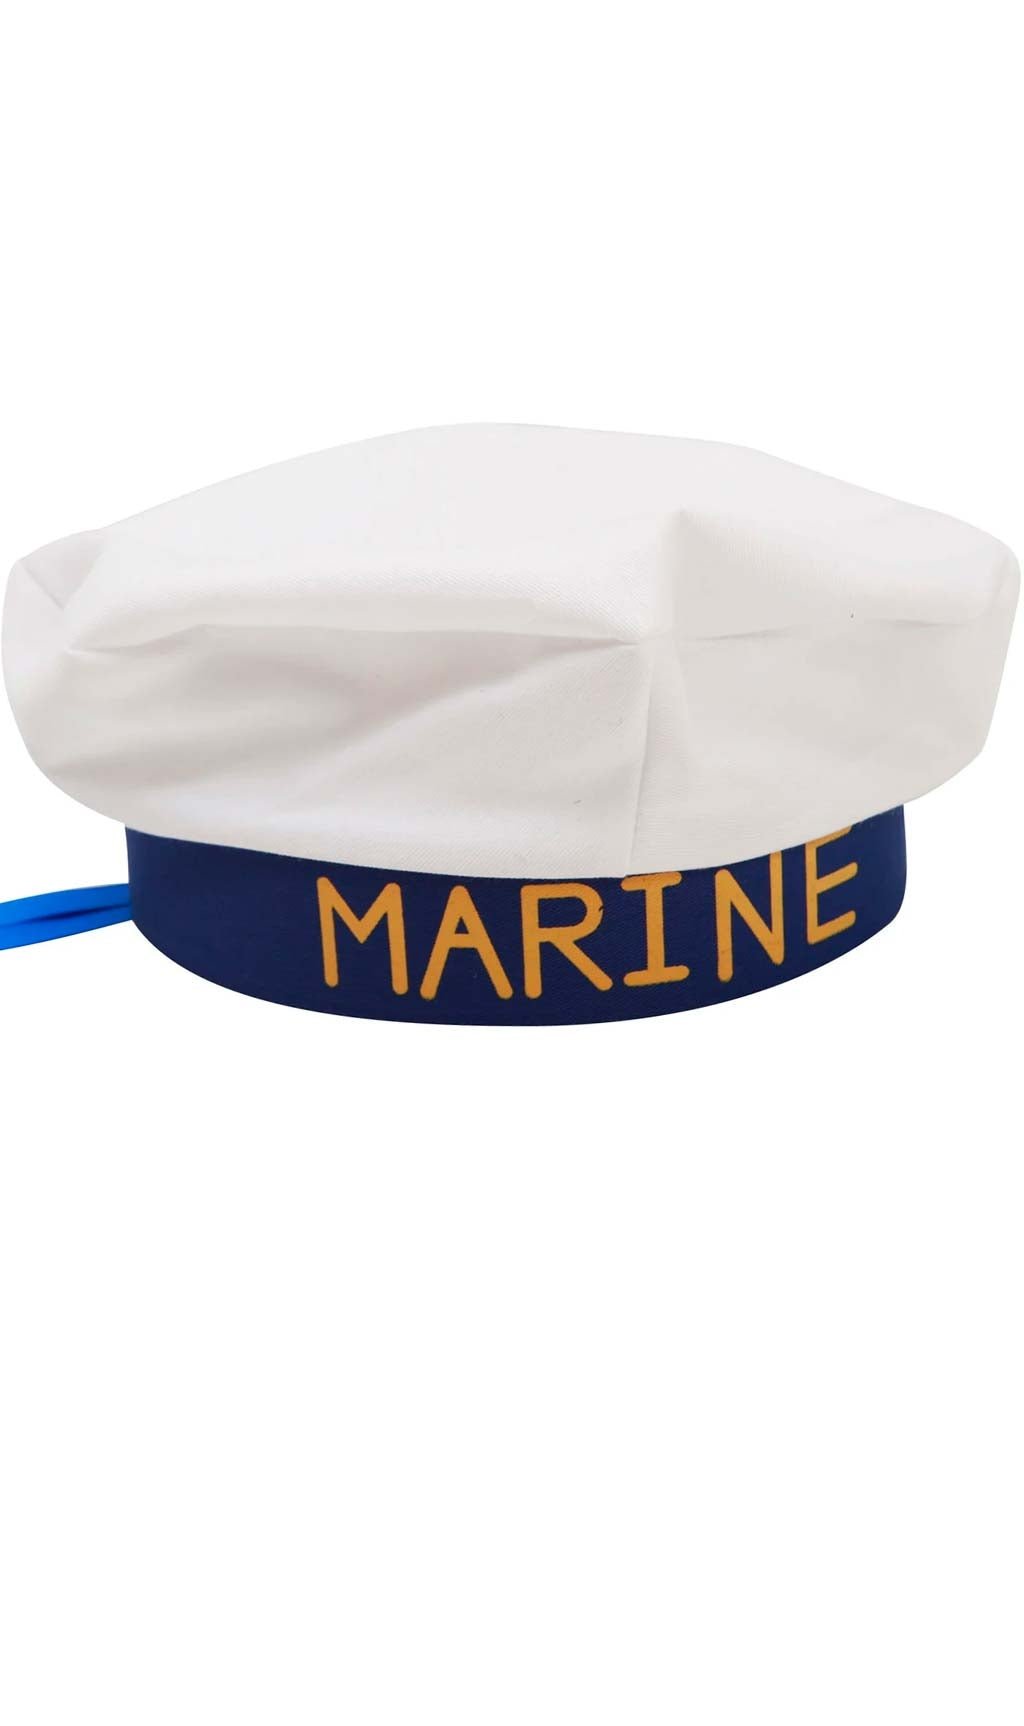 Gorra de Oficial de Marinero para adulto